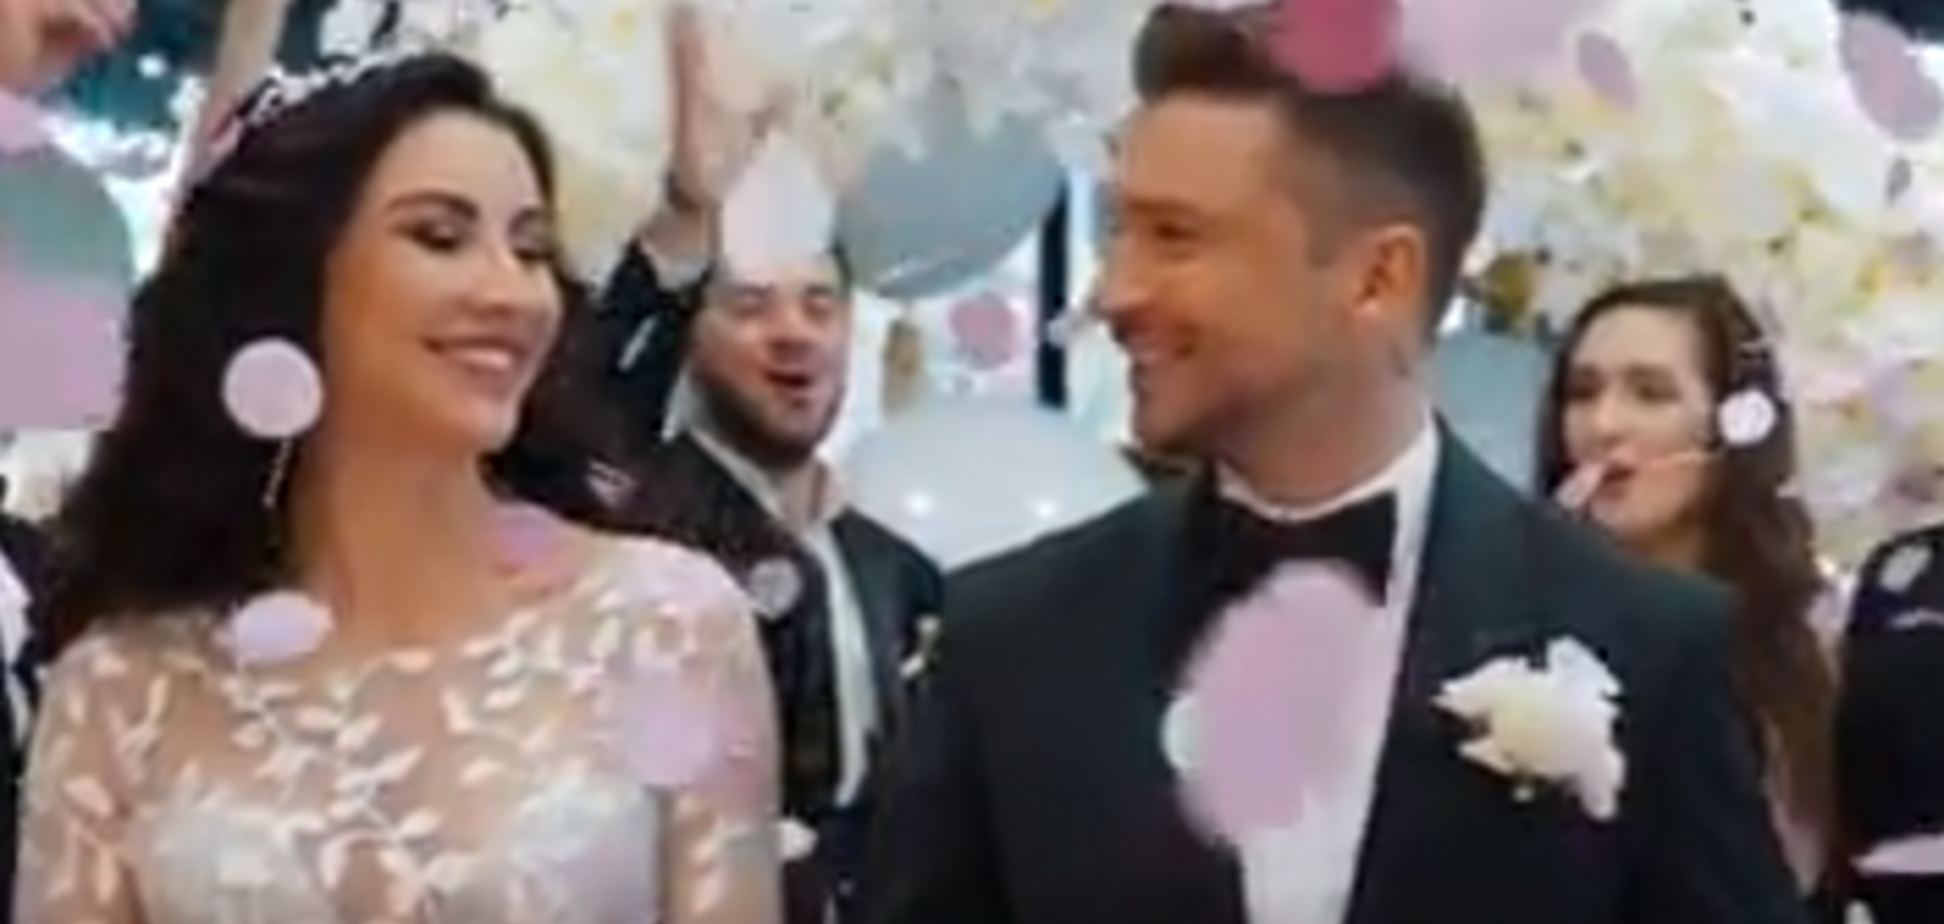 'Більше немає сенсу приховувати': Лазарєв показав відео з 'весілля' і дав пояснення